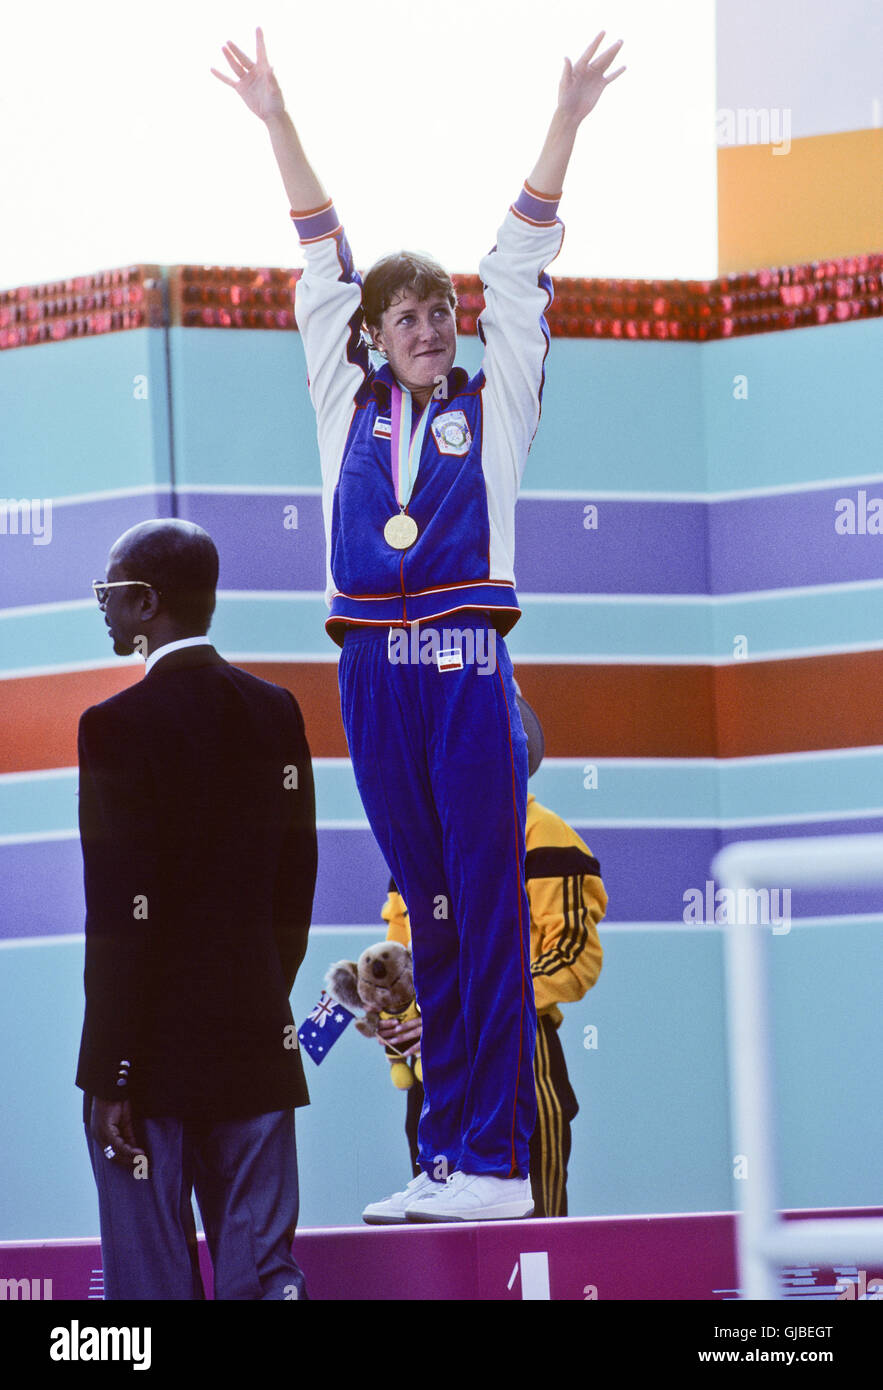 Kalifornien - Los Angeles - 1984 Olympischen Sommerspiele. USA Frauen schwimmen. Tracy Caulkins, 400m Indivdual lagen, Goldmedaille Stockfoto